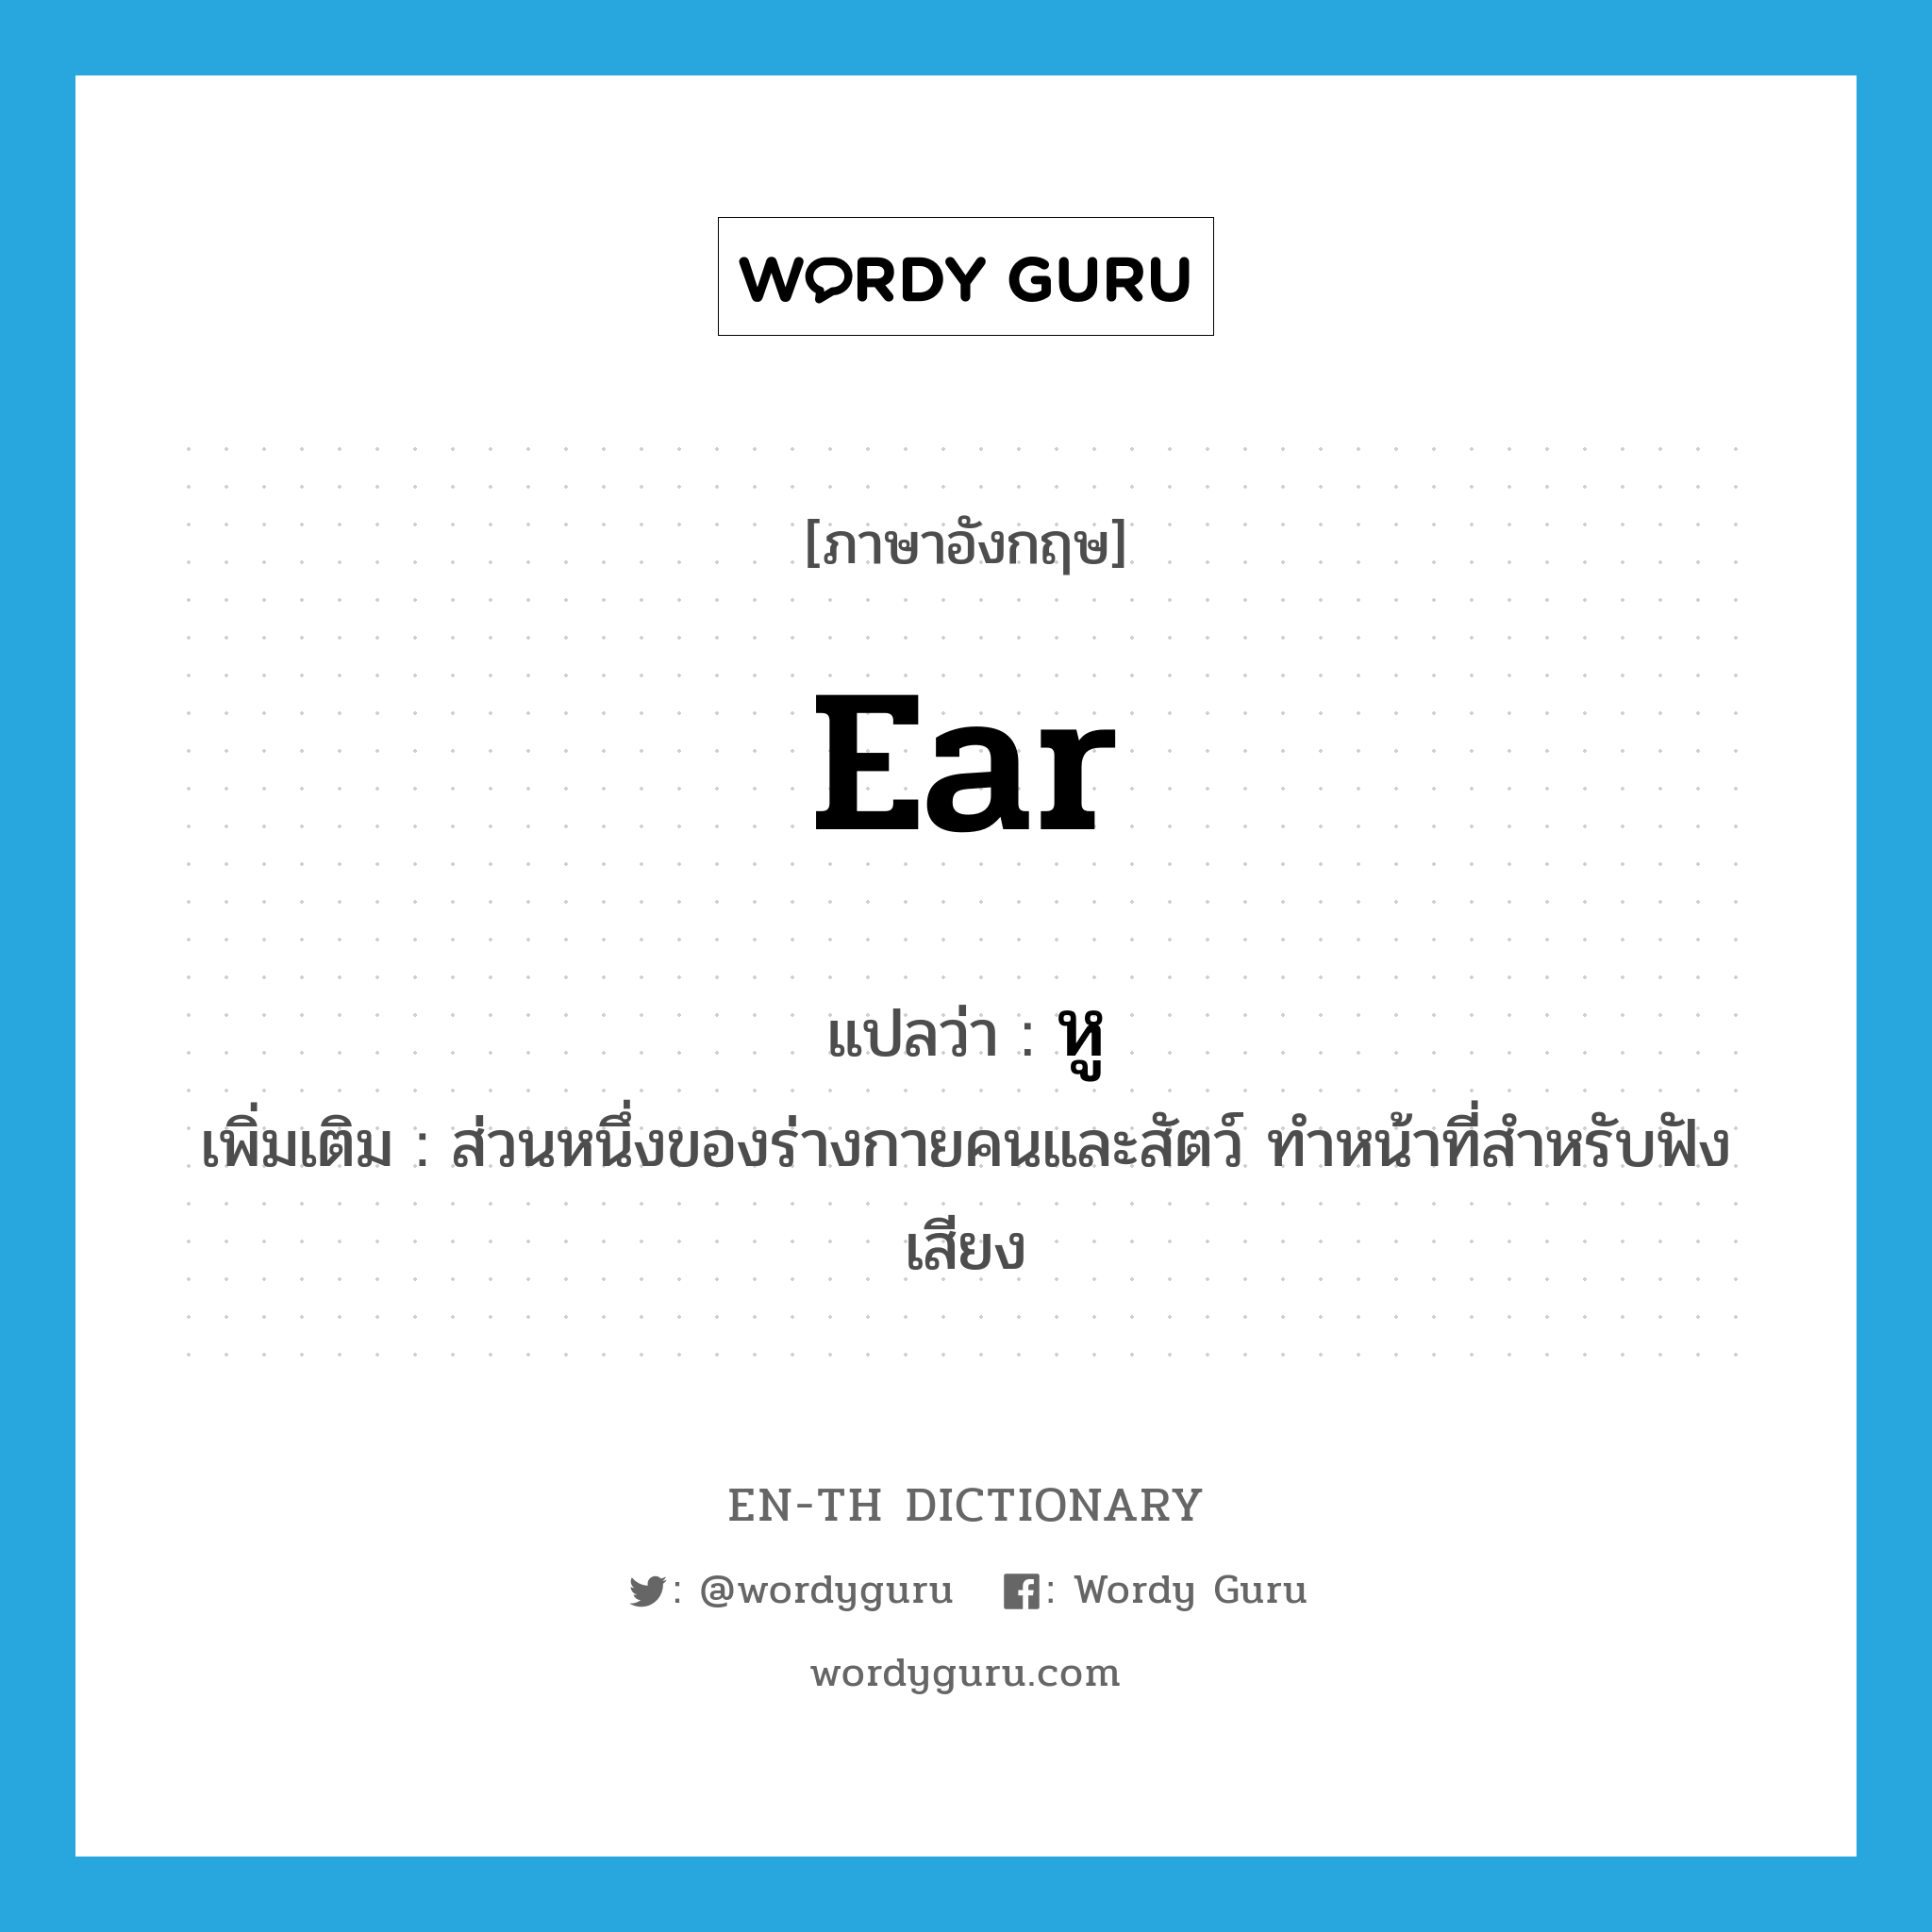 หู ภาษาอังกฤษ?, คำศัพท์ภาษาอังกฤษ หู แปลว่า ear ประเภท N เพิ่มเติม ส่วนหนึ่งของร่างกายคนและสัตว์ ทำหน้าที่สำหรับฟังเสียง หมวด N